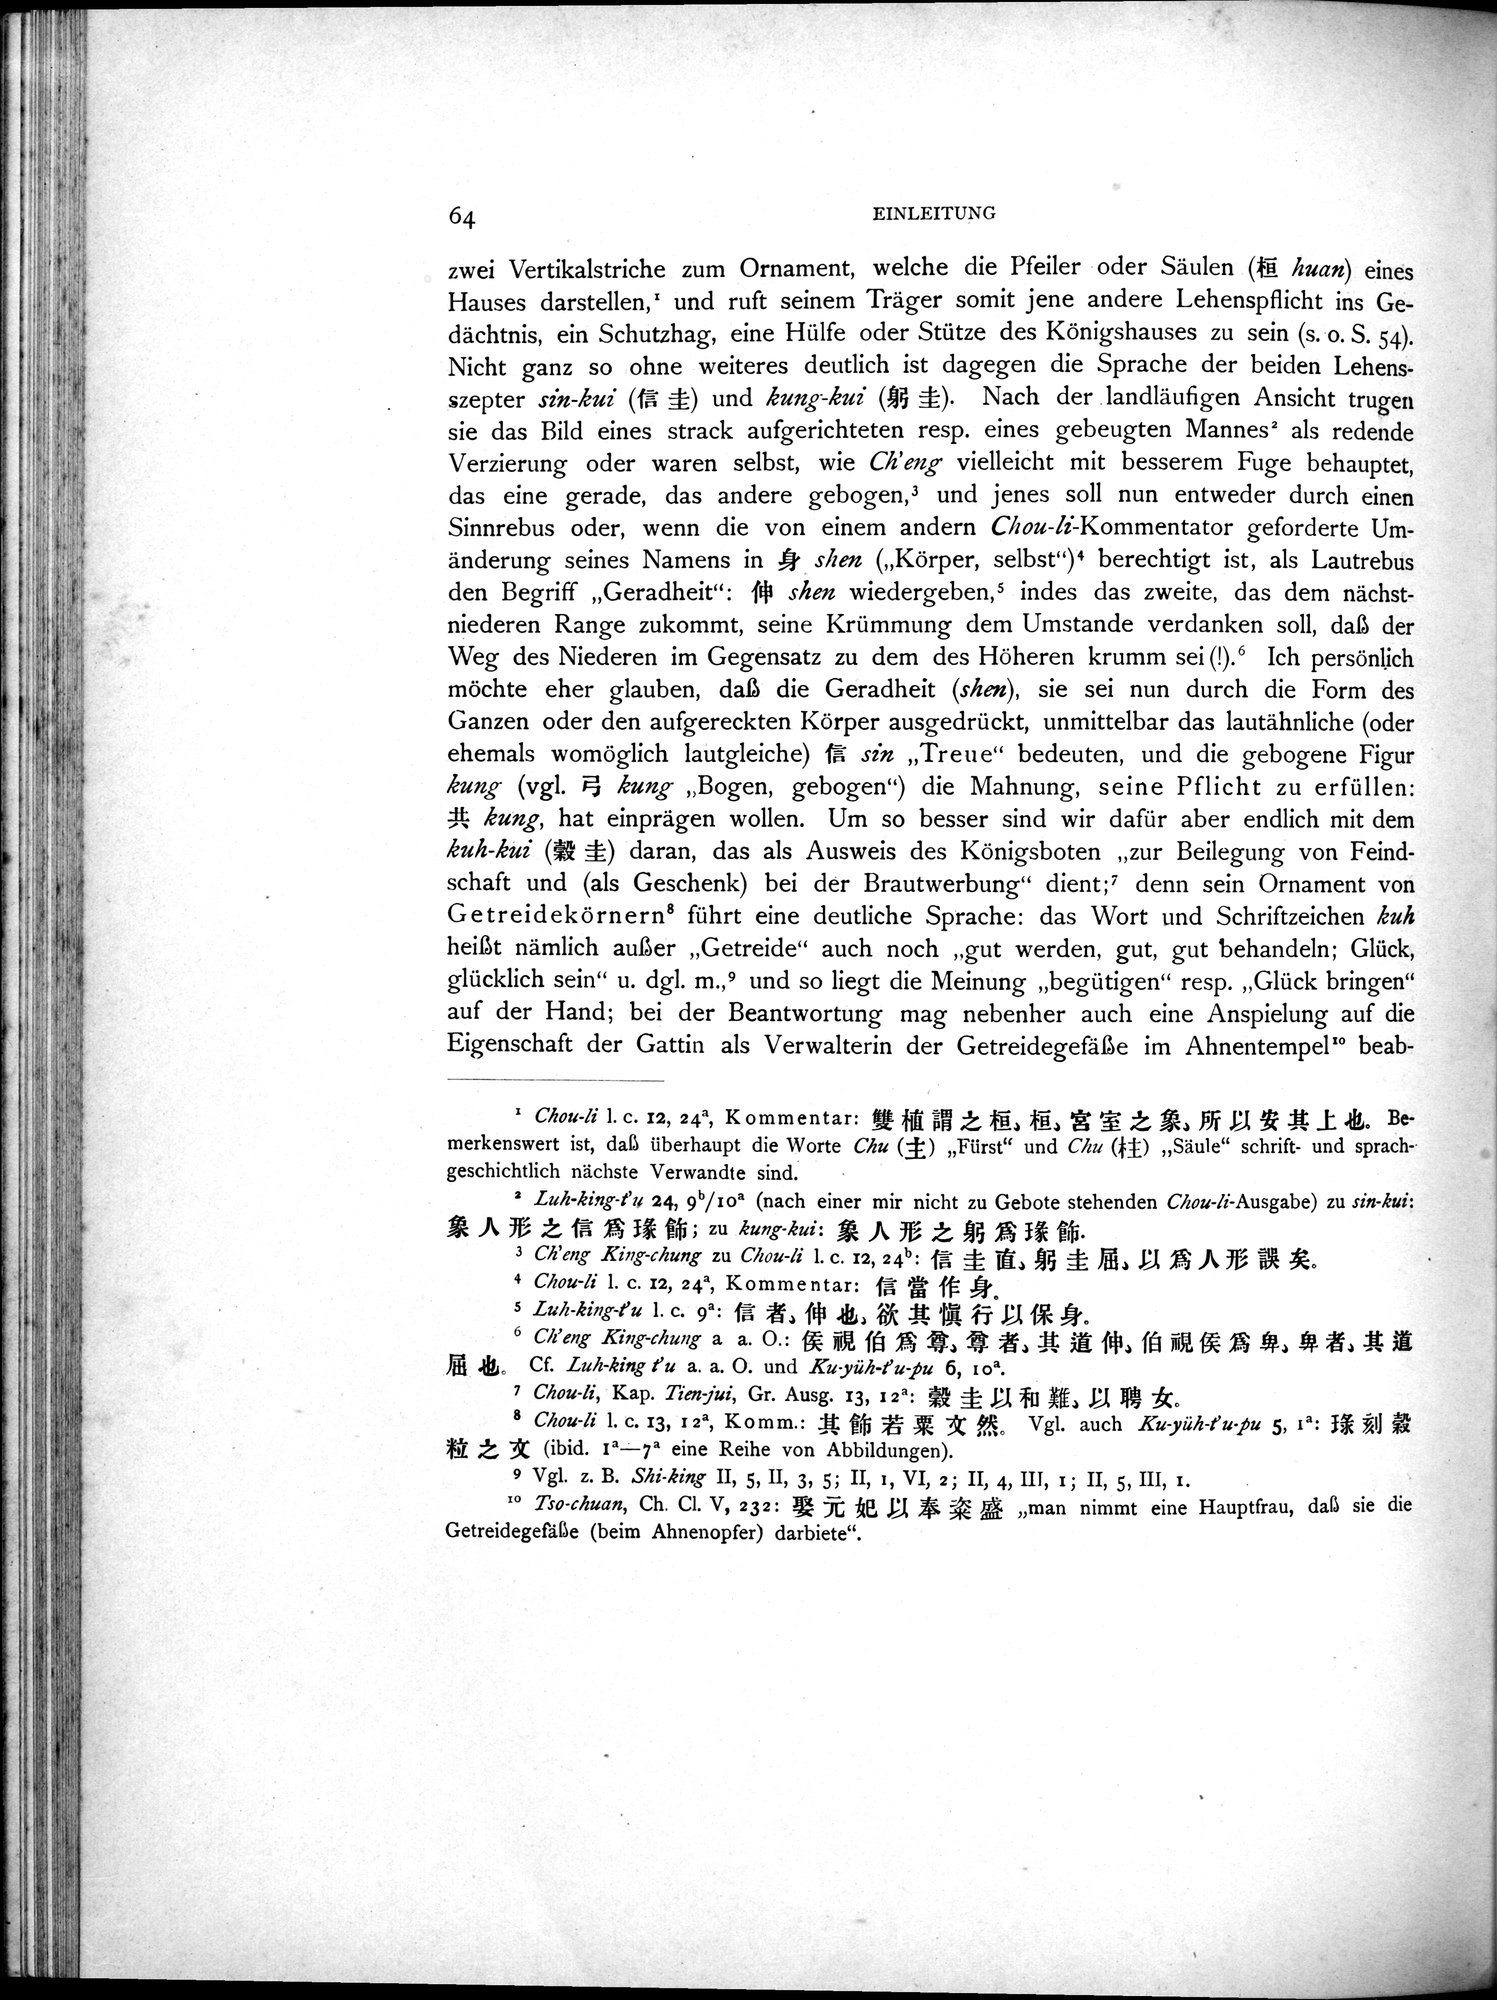 Die Chinesischen Handschriften- und sonstigen Kleinfunde Sven Hedins in Lou-lan : vol.1 / Page 88 (Grayscale High Resolution Image)